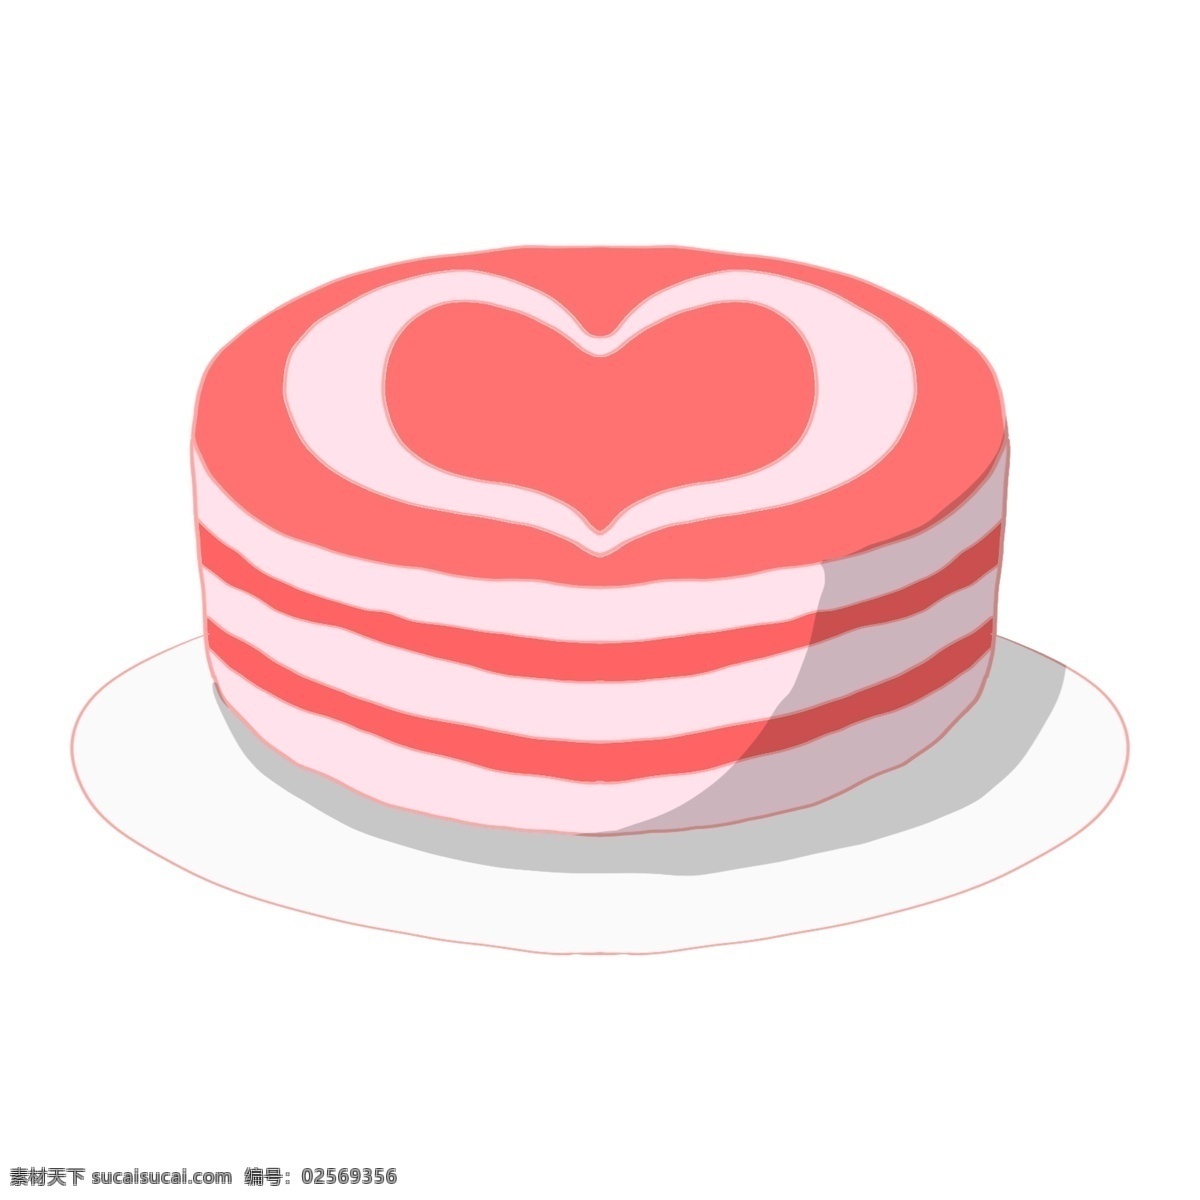 情人节 红色 蛋糕 情人节蛋糕 桃心蛋糕 漂亮的蛋糕 蛋糕插画 粉色的蛋糕 美味的蛋糕 营养的蛋糕